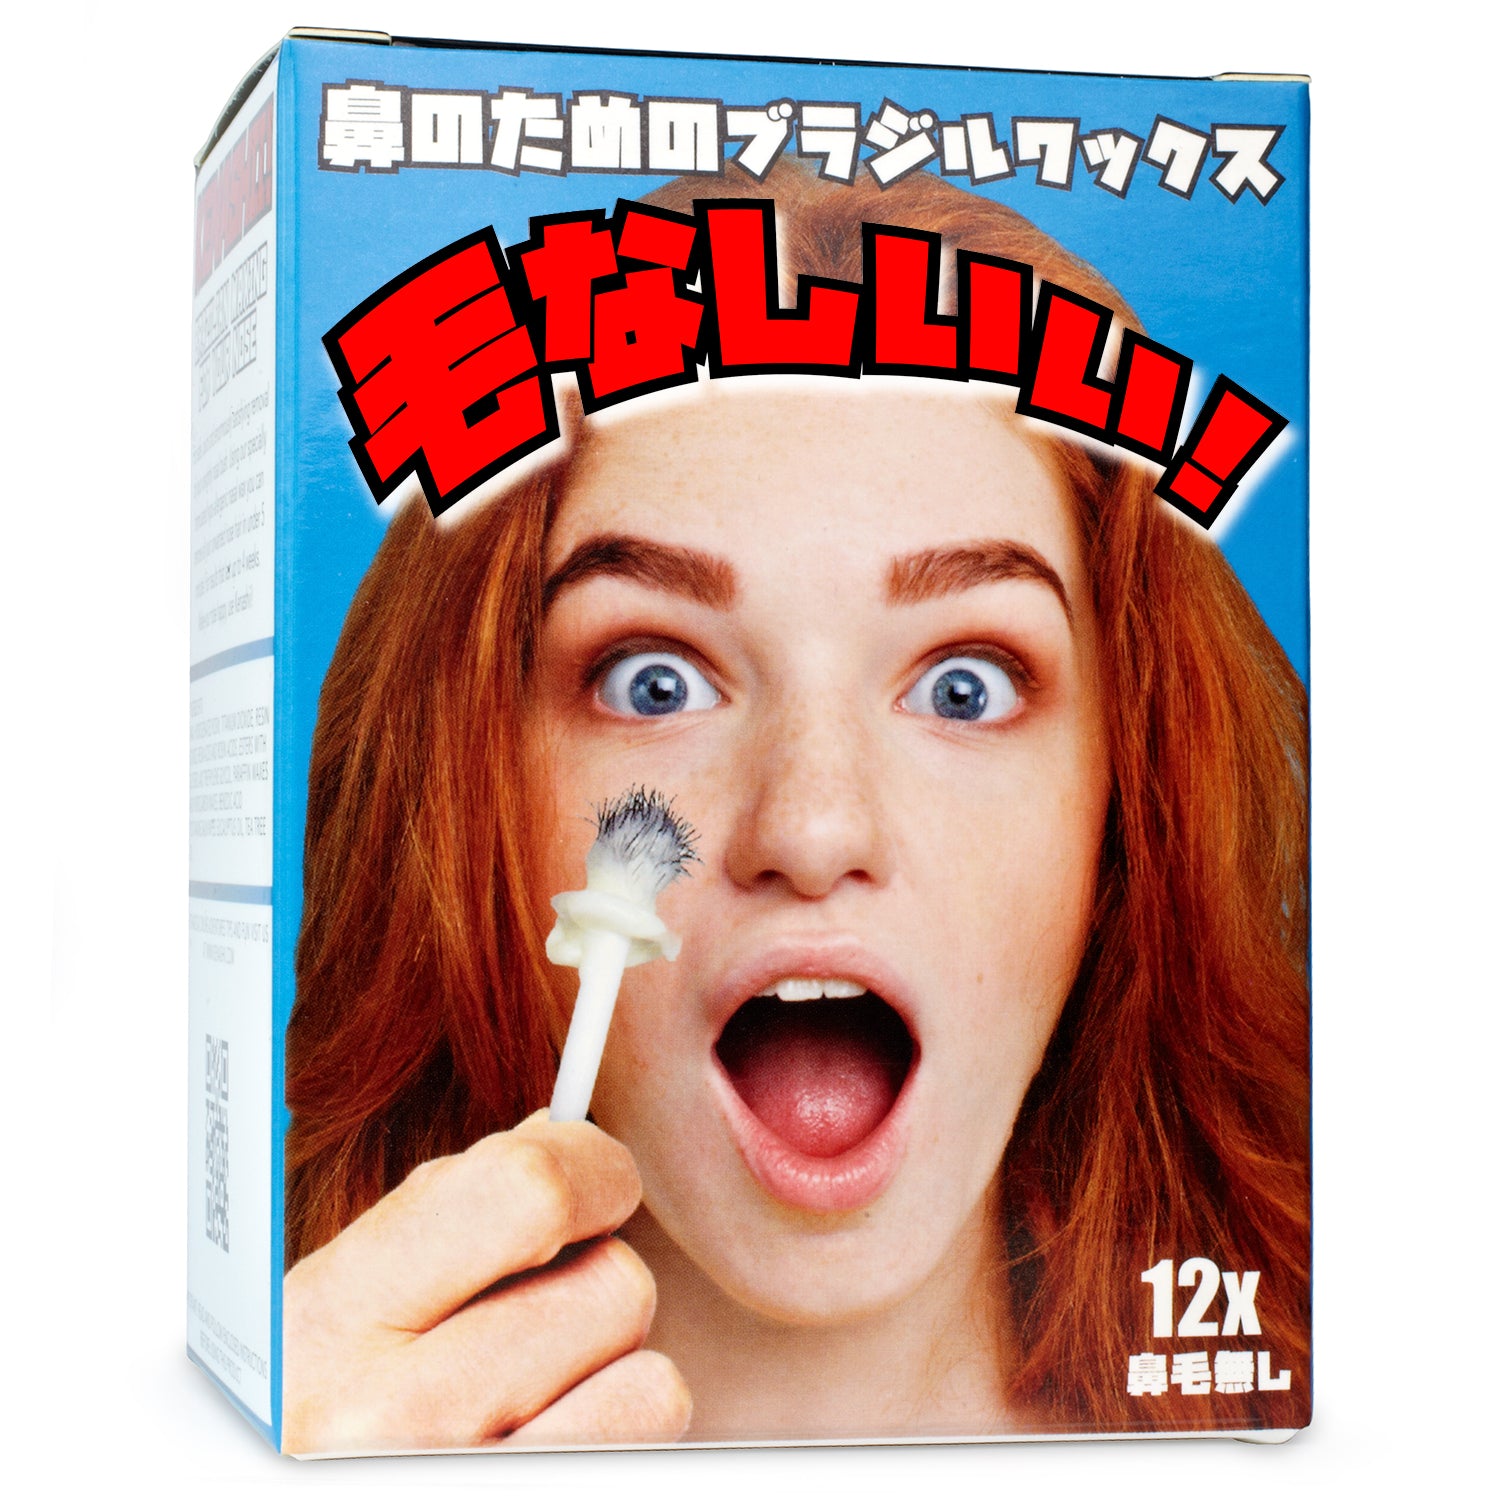 Kenashii Nose Waxing Kit